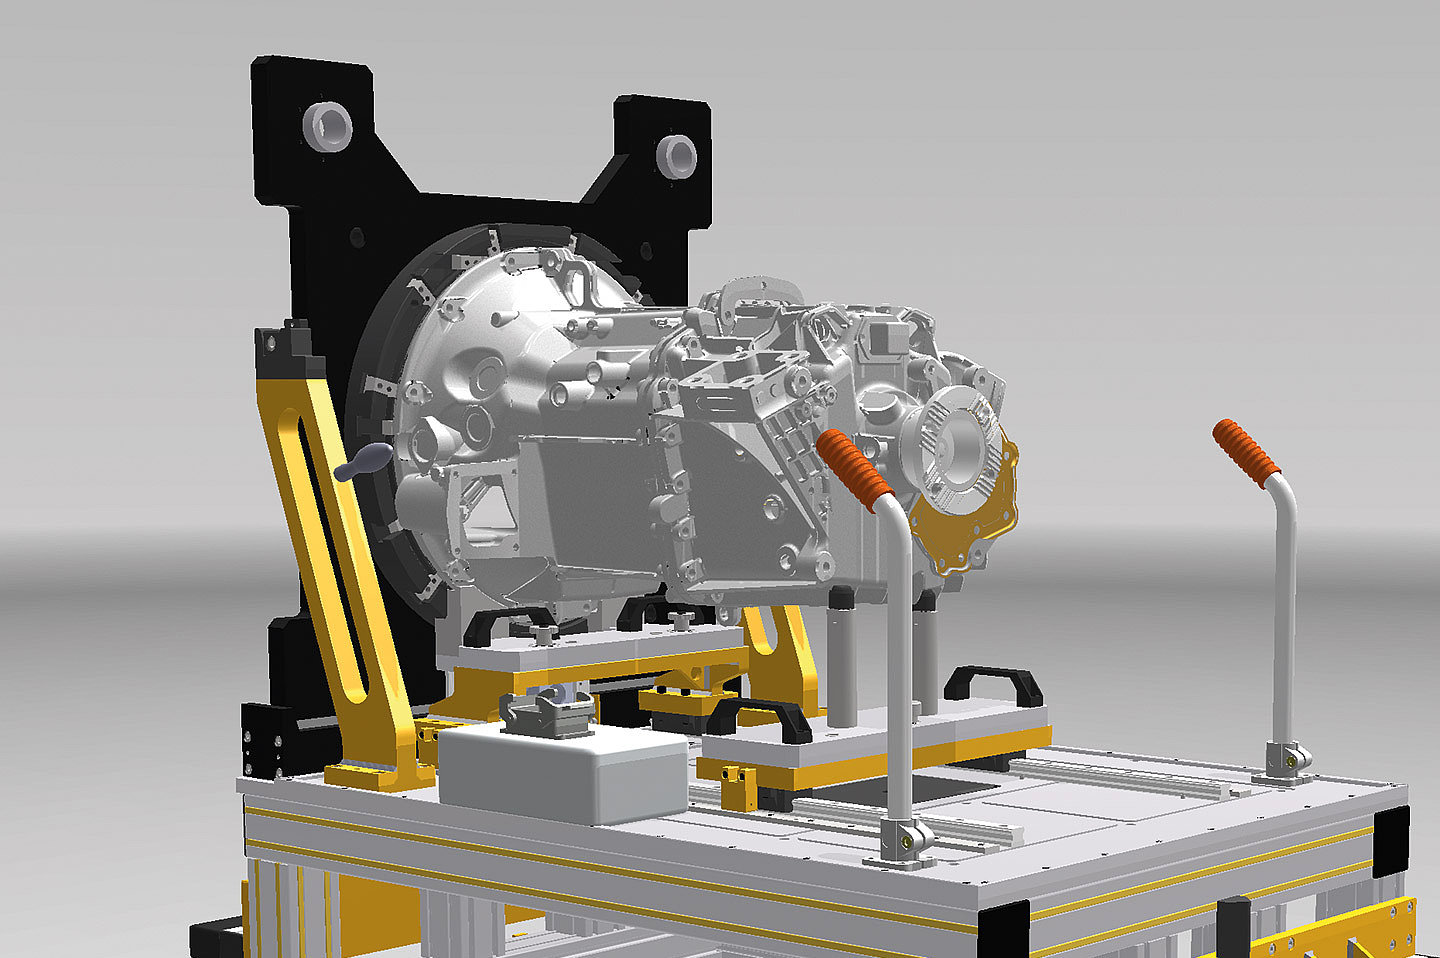 Eol-Funktionsprüfstand von Blum-Novotest zum testen von Heavy-Truck Getrieben